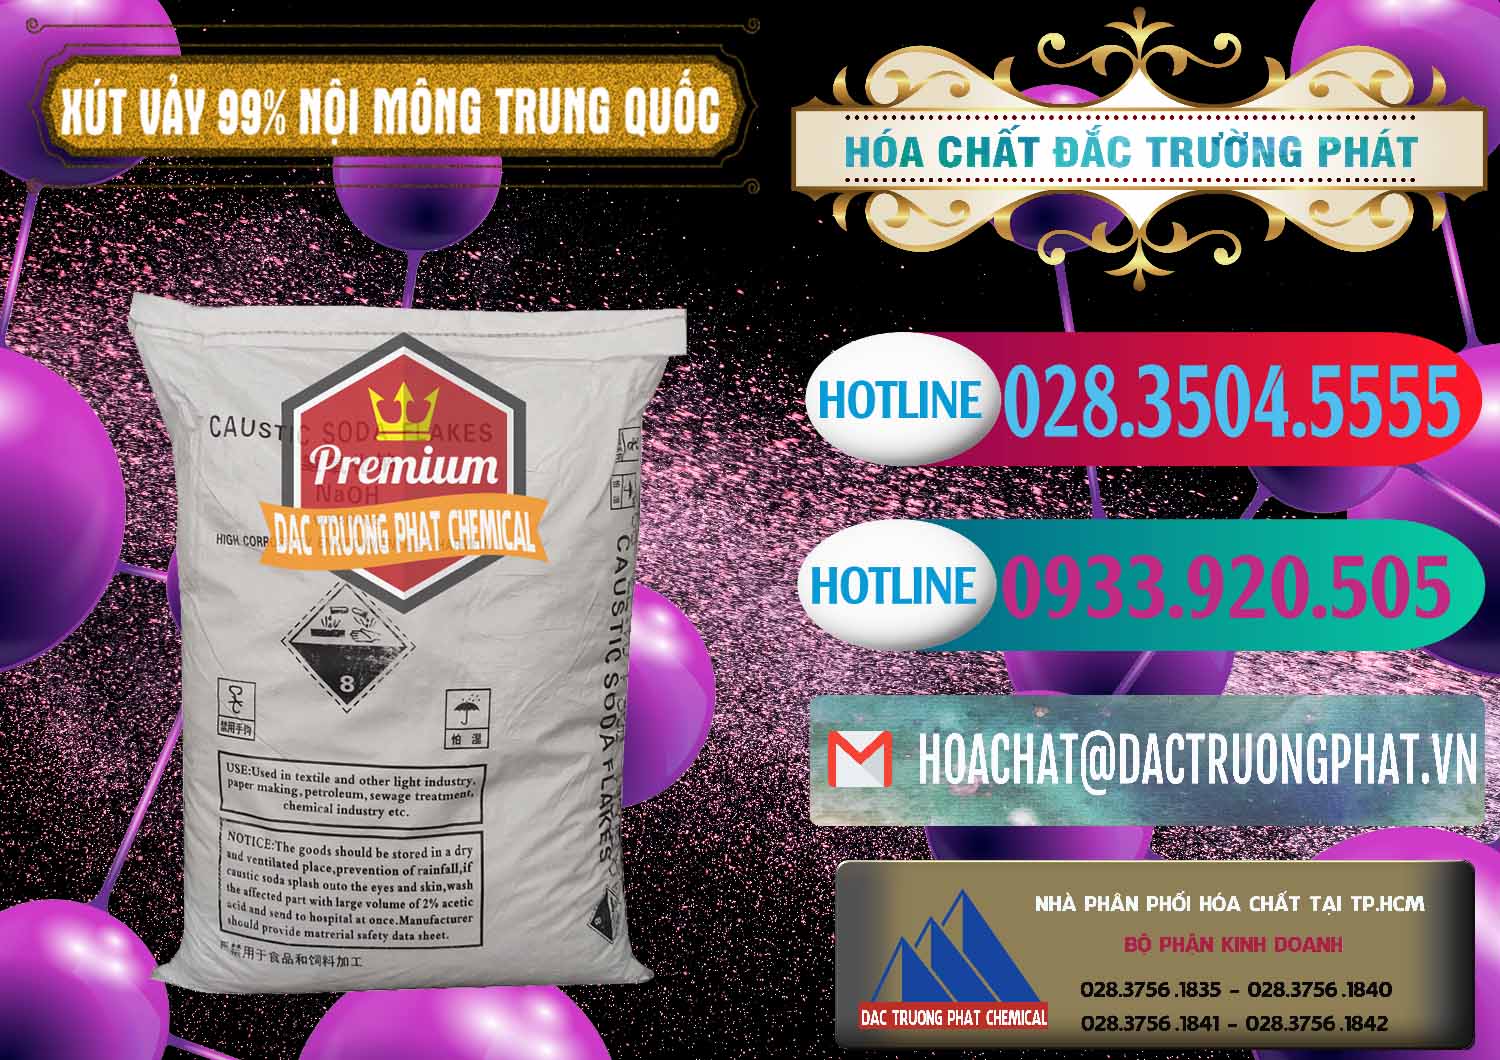 Nơi chuyên cung cấp - bán Xút Vảy - NaOH Vảy 99% Nội Mông Trung Quốc China - 0228 - Đơn vị cung cấp ( phân phối ) hóa chất tại TP.HCM - truongphat.vn